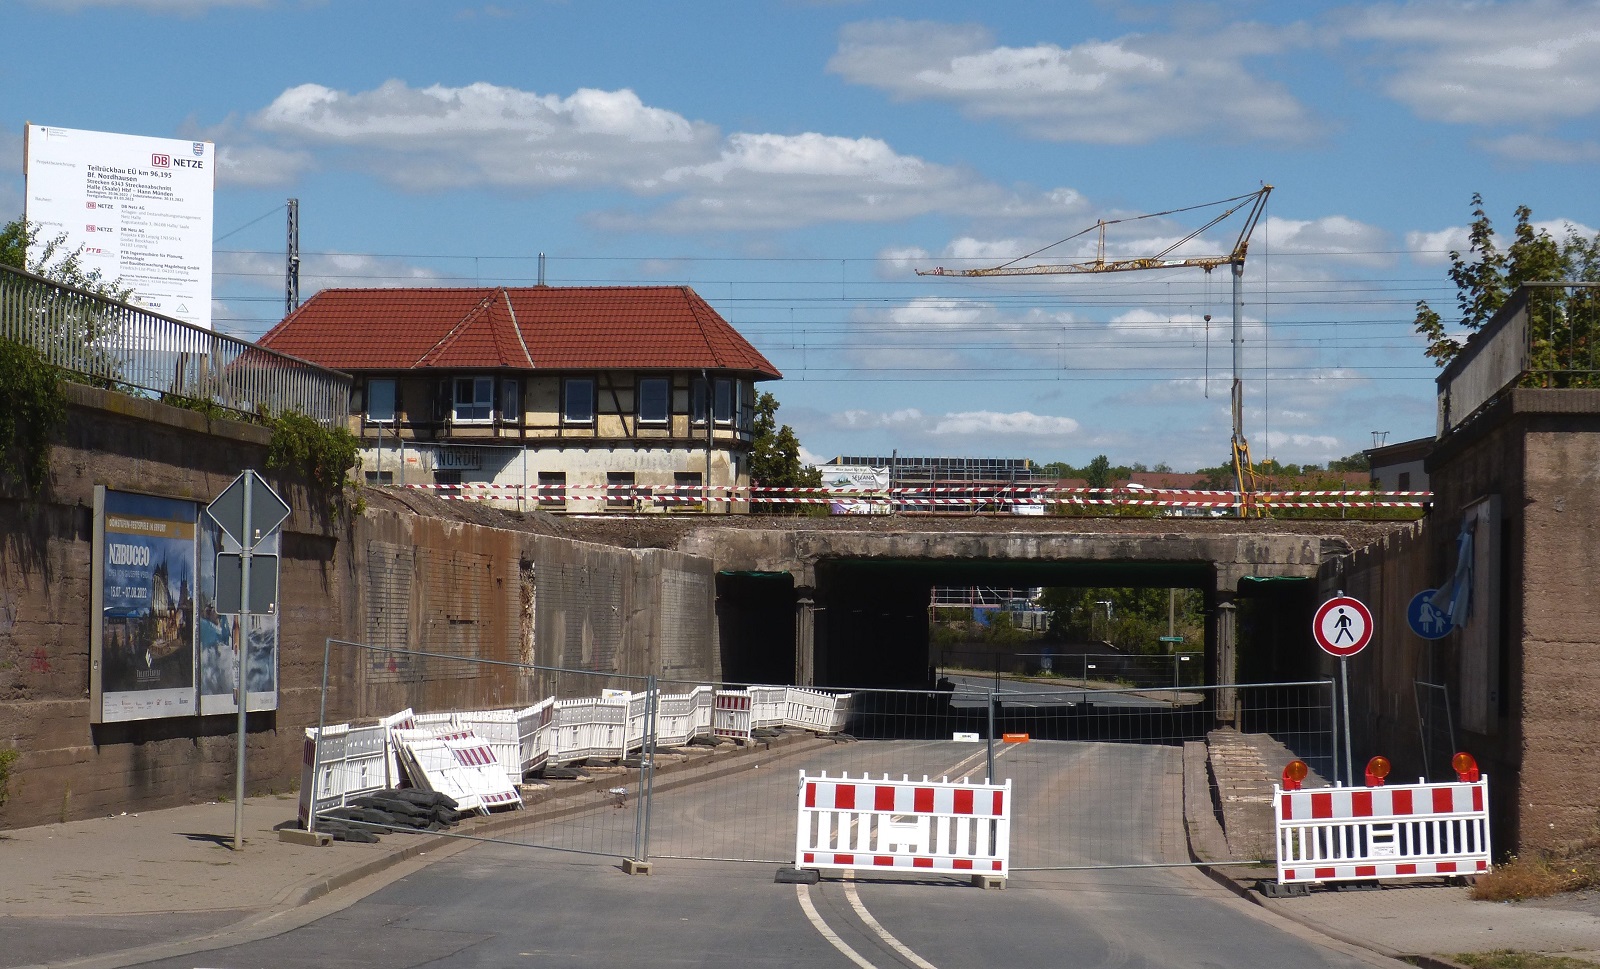 Am 07.08.2022 besuchte ich die Baustelle in Nordhausen in der Helmestraße (B4). Hier quert der Bahnhof Nordhausen die Straße über eine zweiteilige Brücke. Die hier schon fehlende südliche Hälfte, der über 100 Jahre alten und die Jahre gekommenen Brücke wurde ersatzlos abgerissen, da sich hier nur noch ungenutze Gleise des Güterbahnhofs befanden